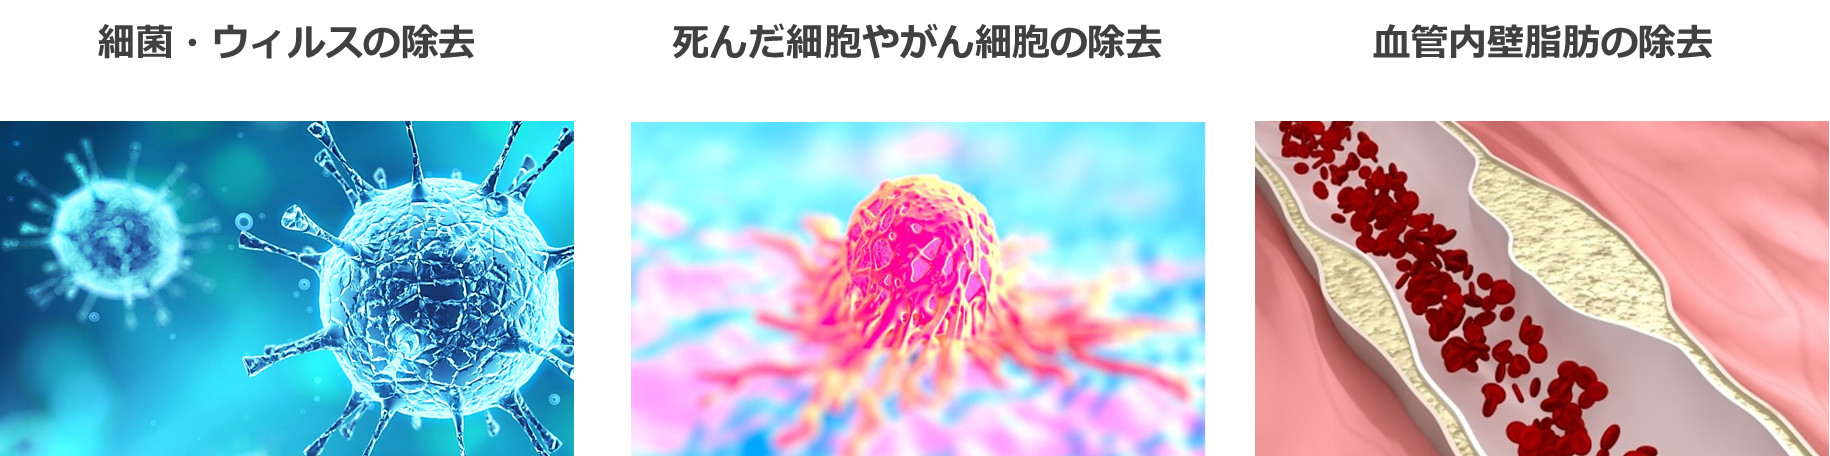 病原体の除去・ガン細胞の除去・血管の掃除